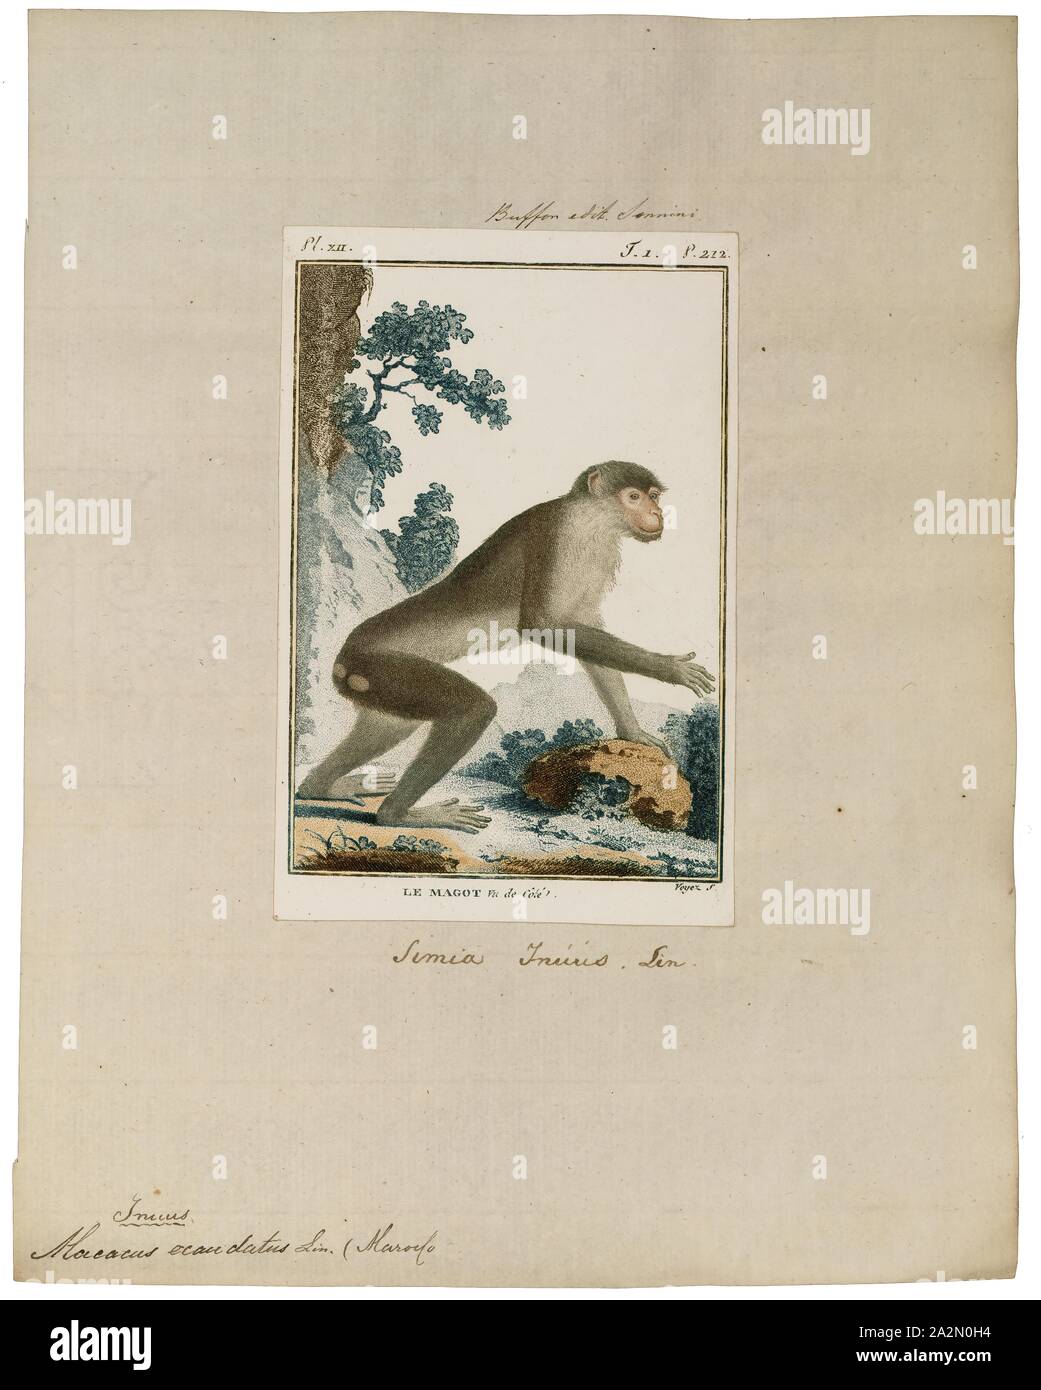 Macacus ecaudatus, Print, 1798-1803 Stock Photo